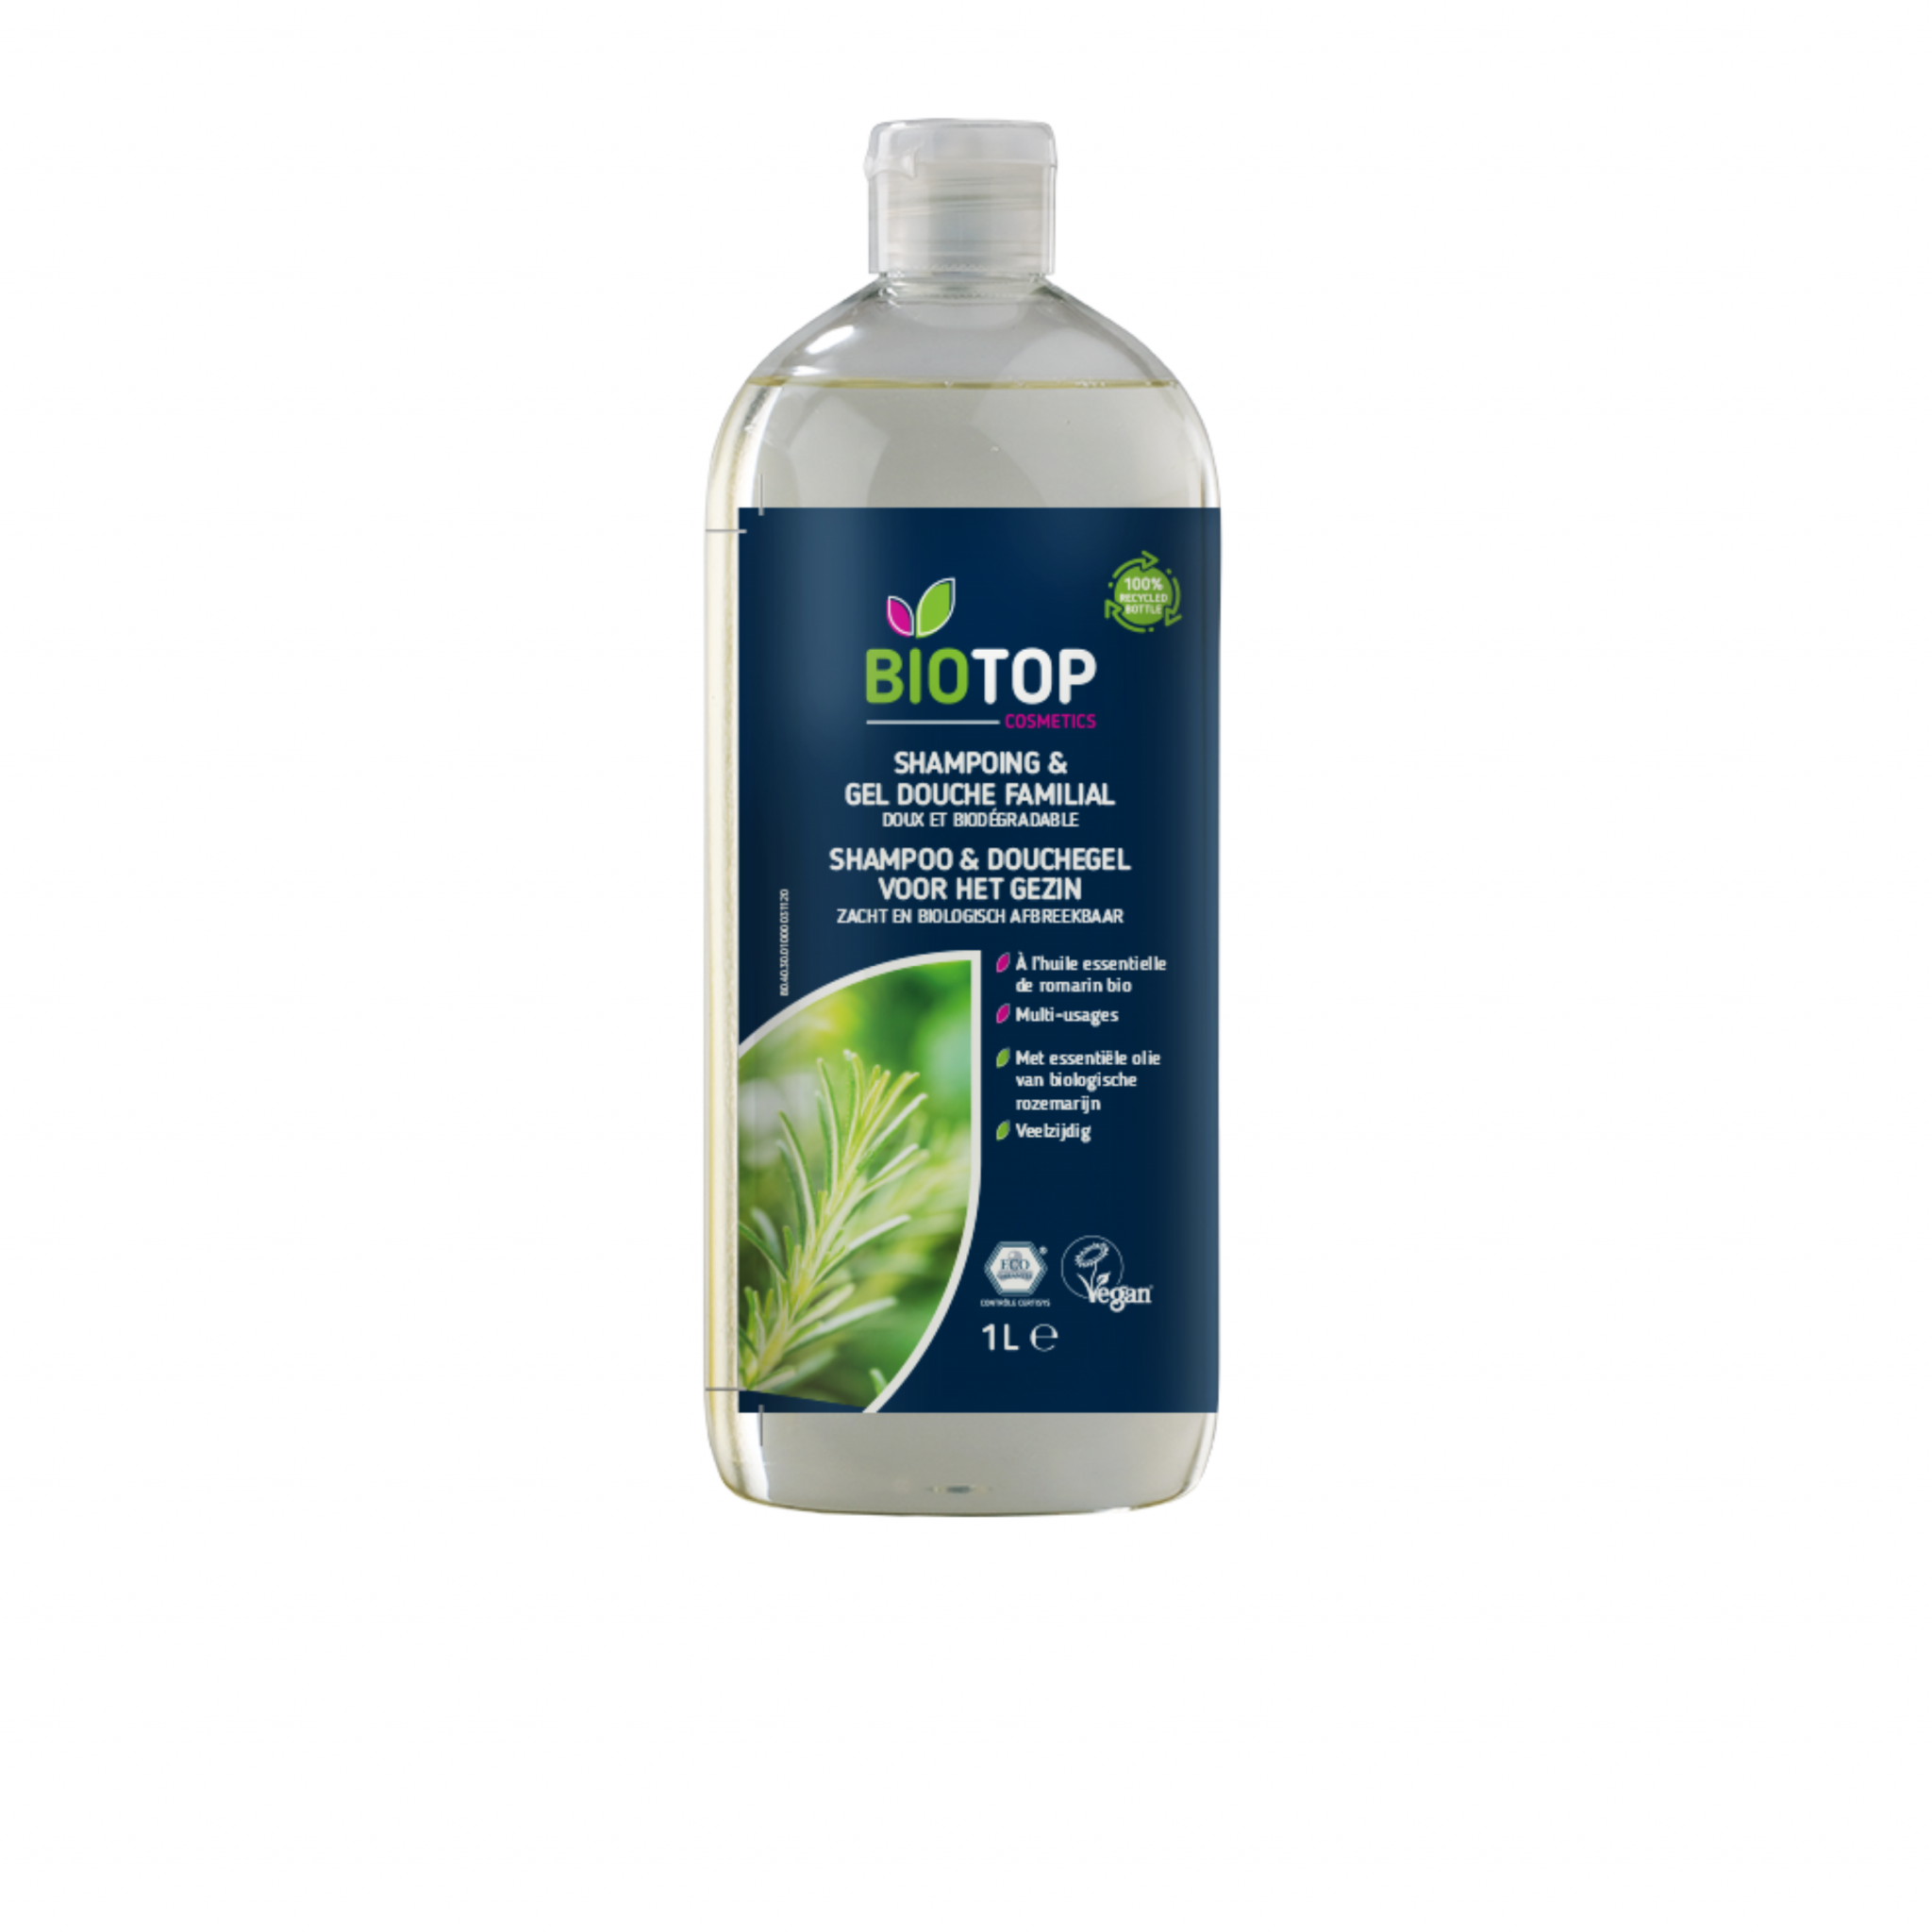 Verder Analist Specialist Biotop eco shampoo & douchegel 1 liter - The Zero Waste Shop - Bag-again.nl